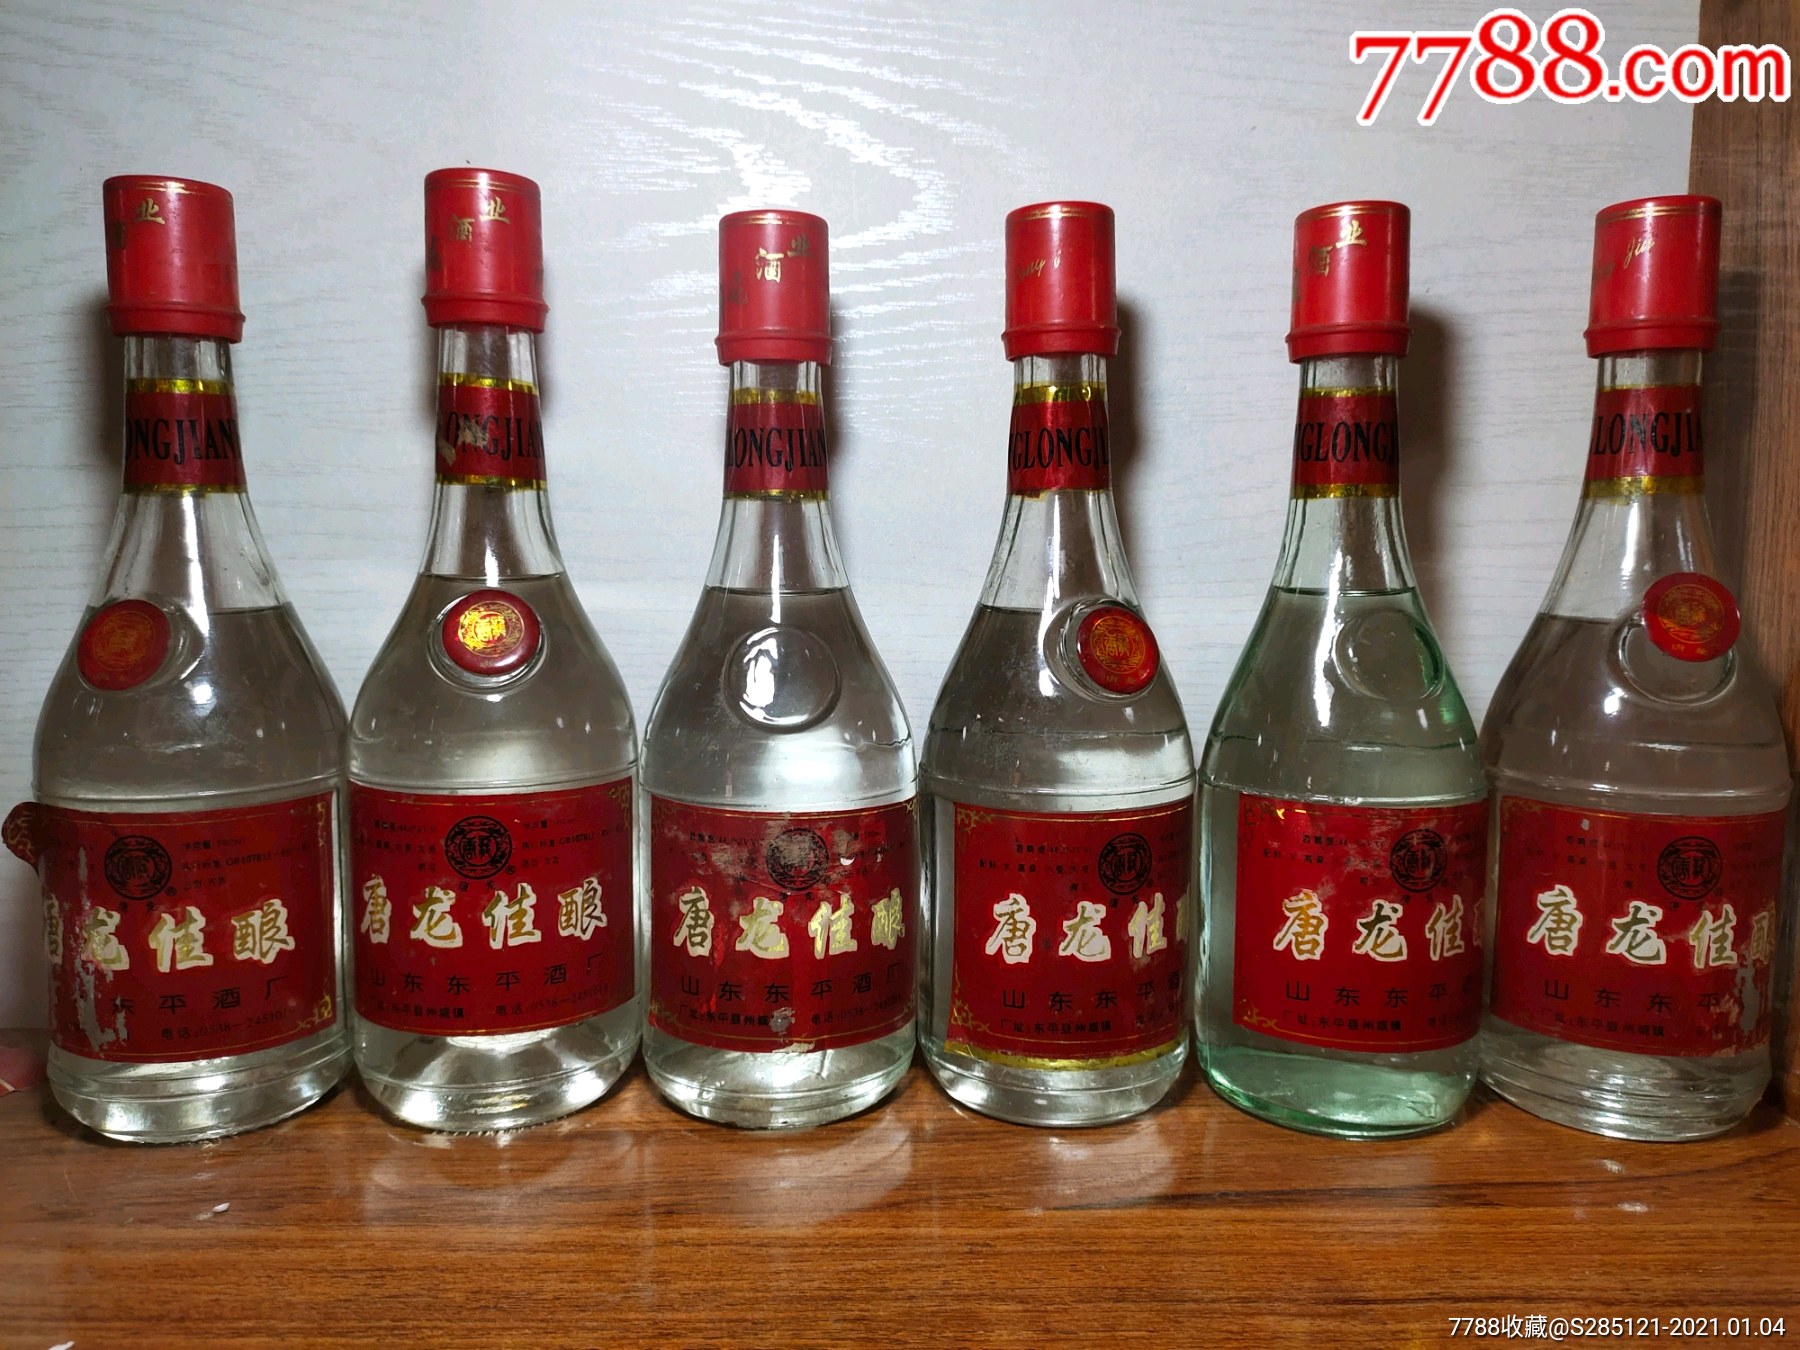 0浏览量:备注:山东地方名酒东平县酒厂出品90年代44度浓香型白酒,经典